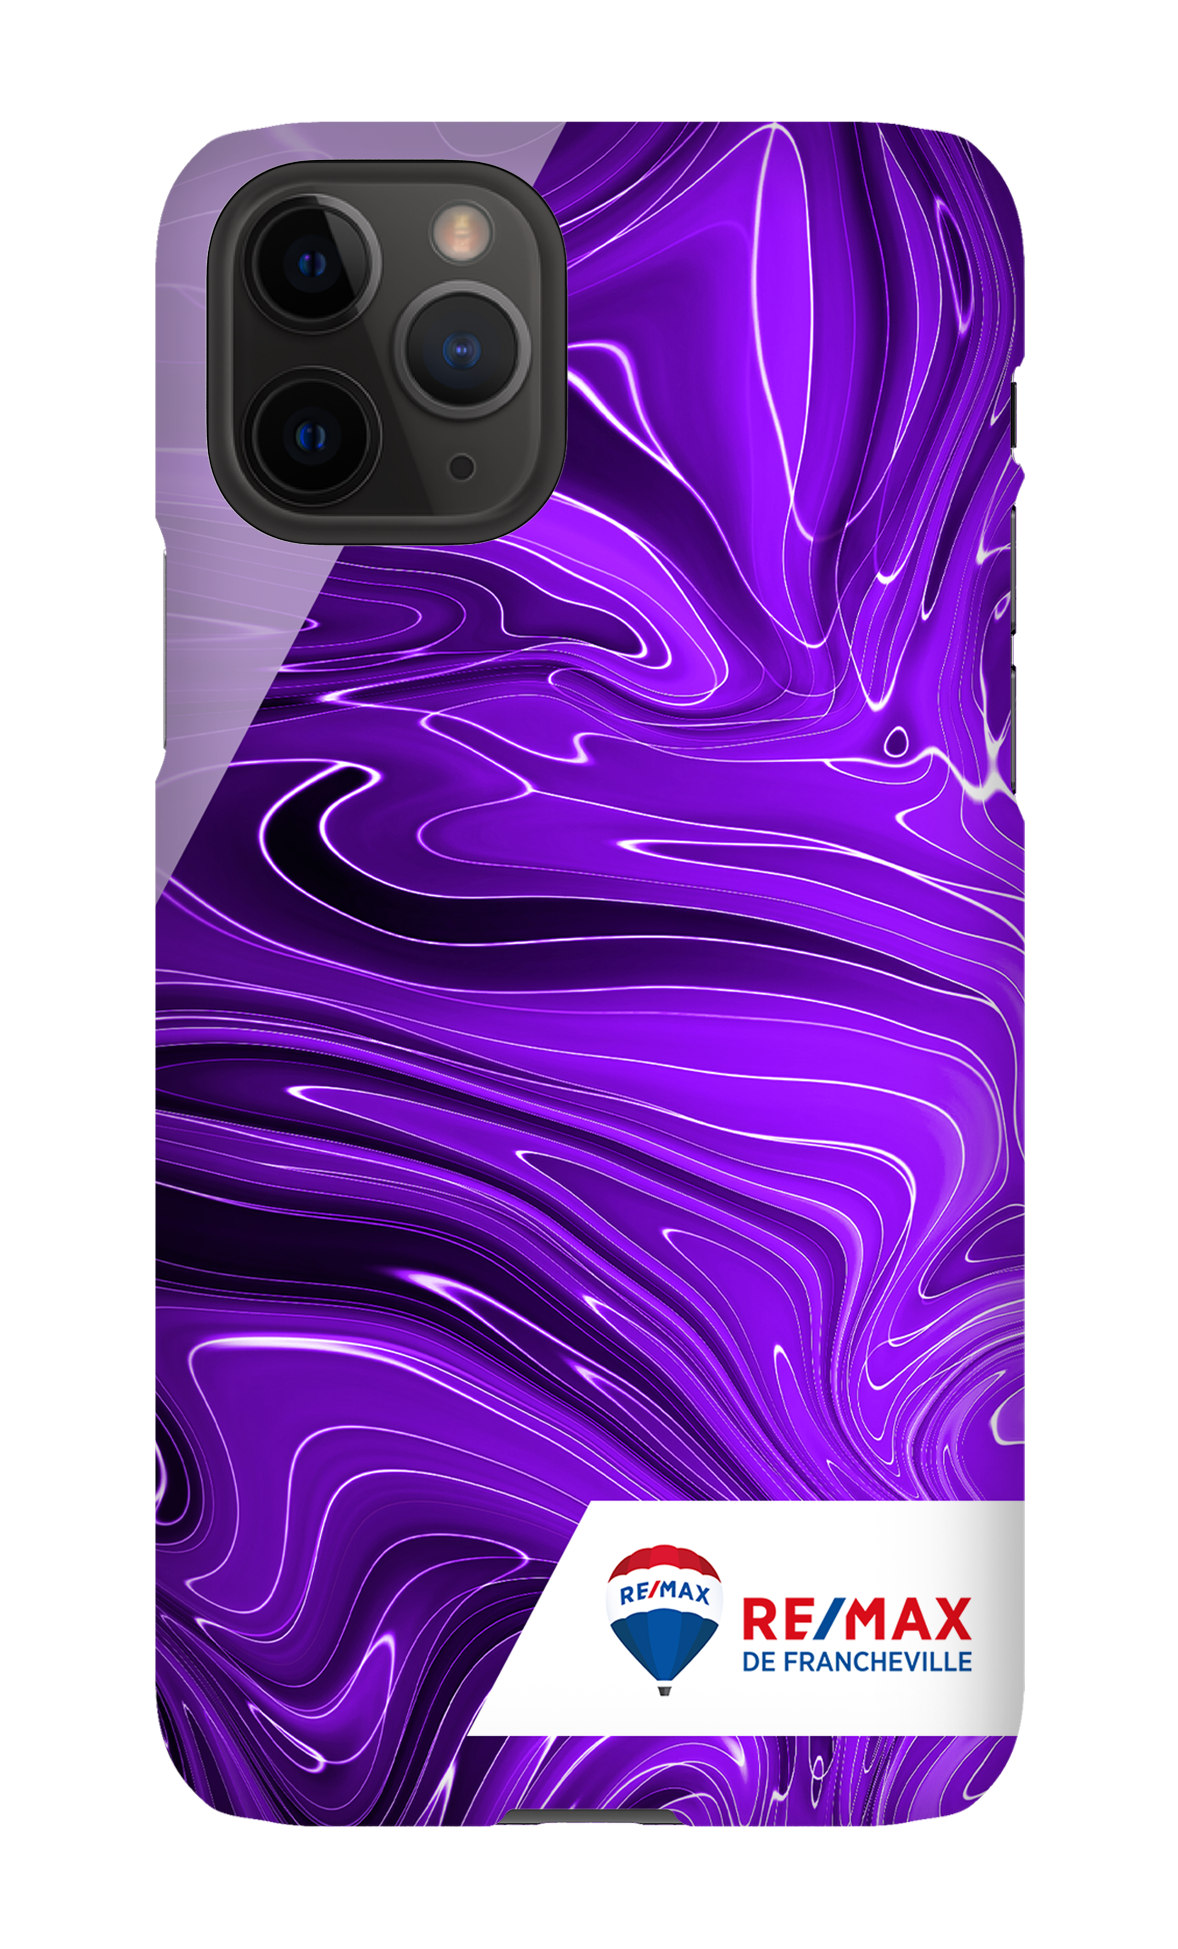 Peinture marbrée sombre violette de Francheville - iPhone 11 Pro